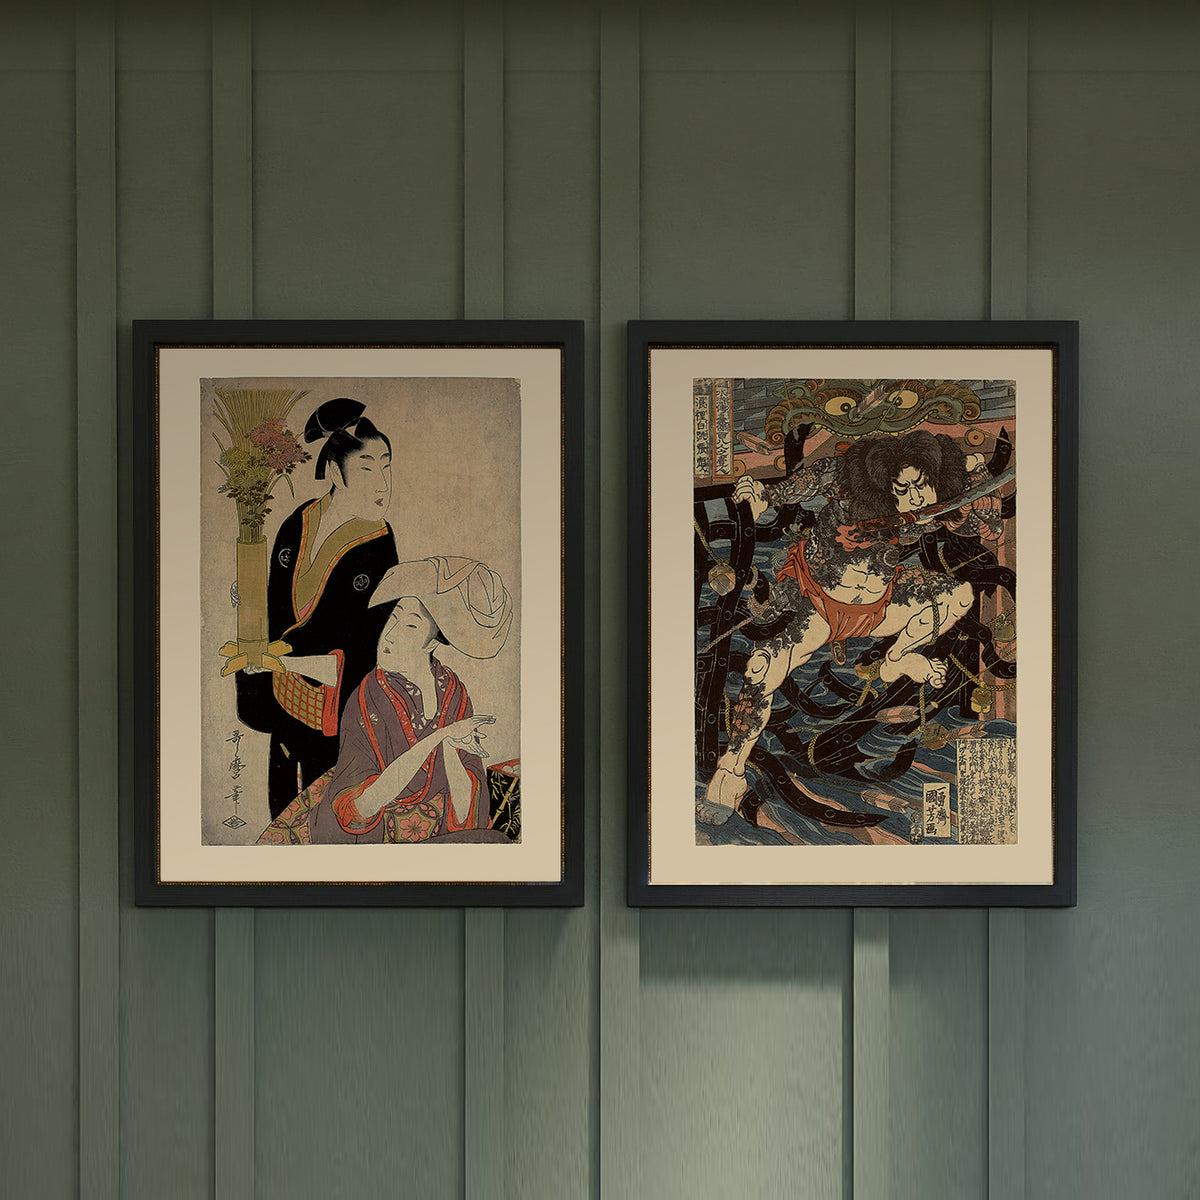 Utamaro Le neuvieme mois de la serie 5 festivals amoureux